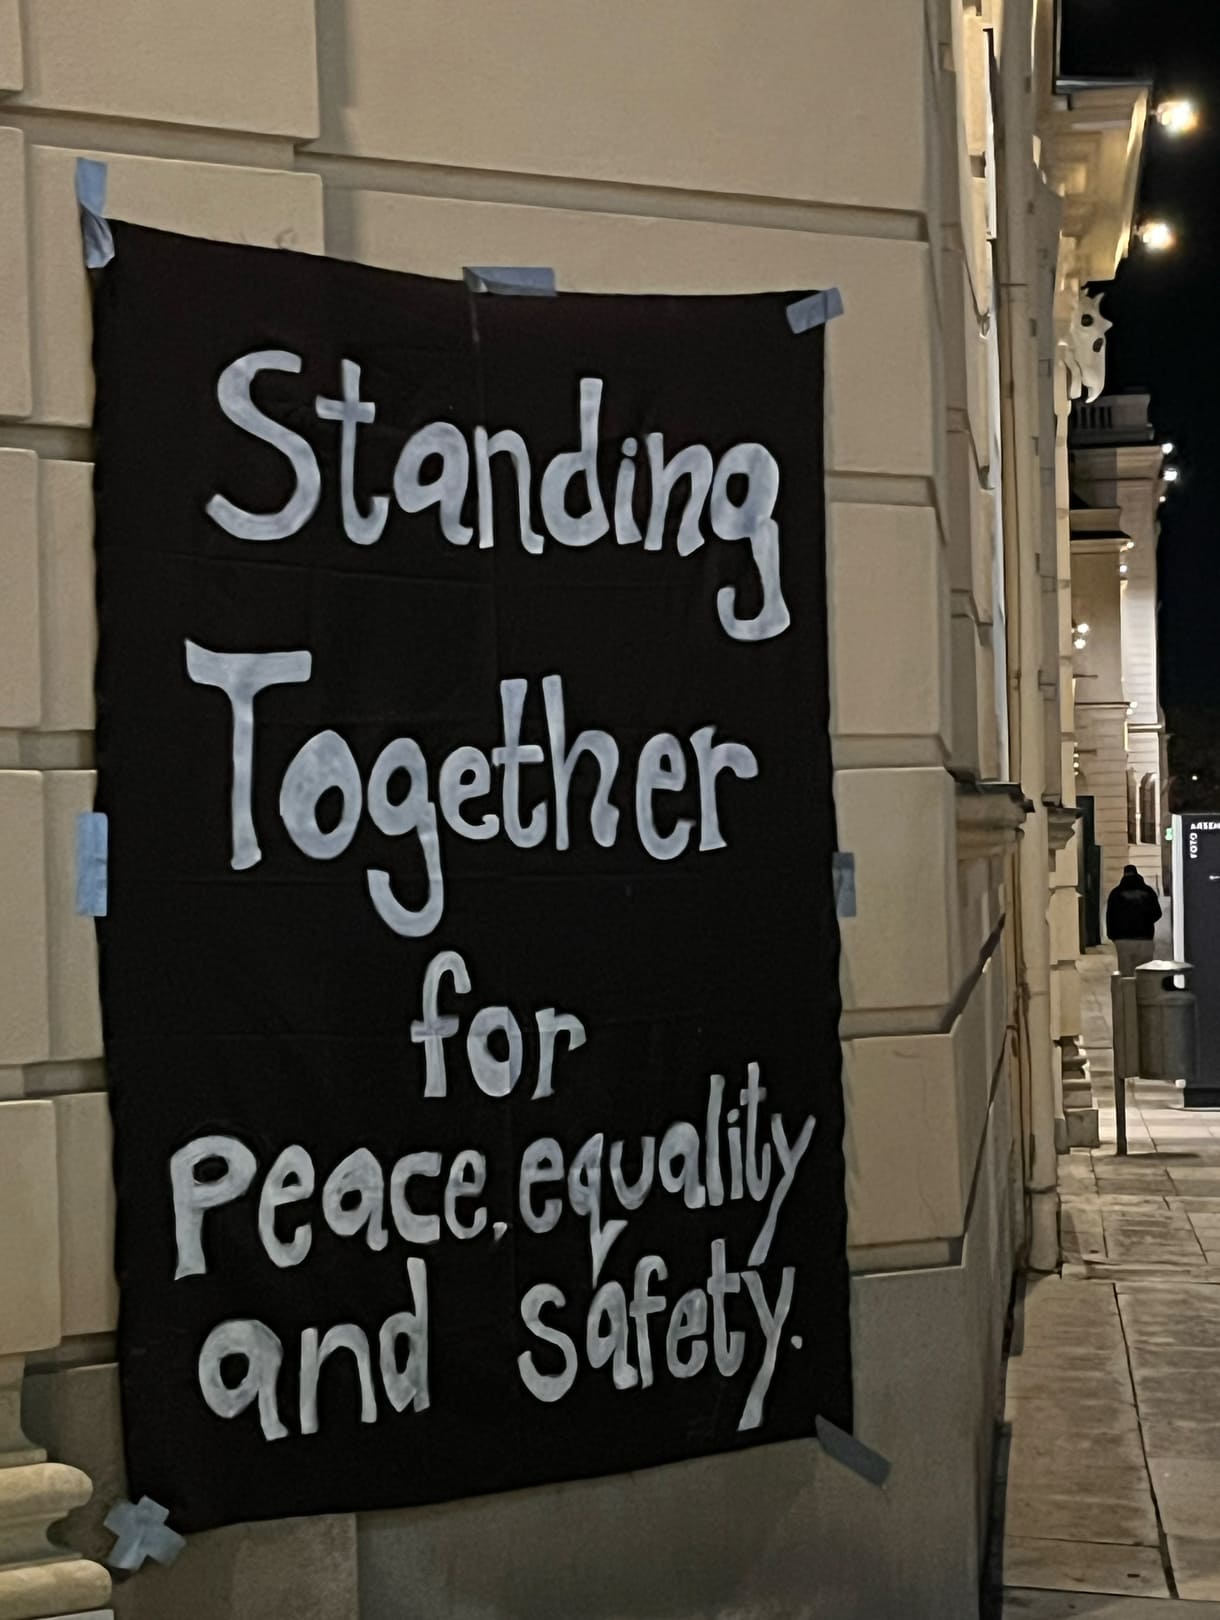 Zusammenstehen für Frieden, Gleichwertigkeit und Sicherheit - das einzige Transparent bei der Kundgebung